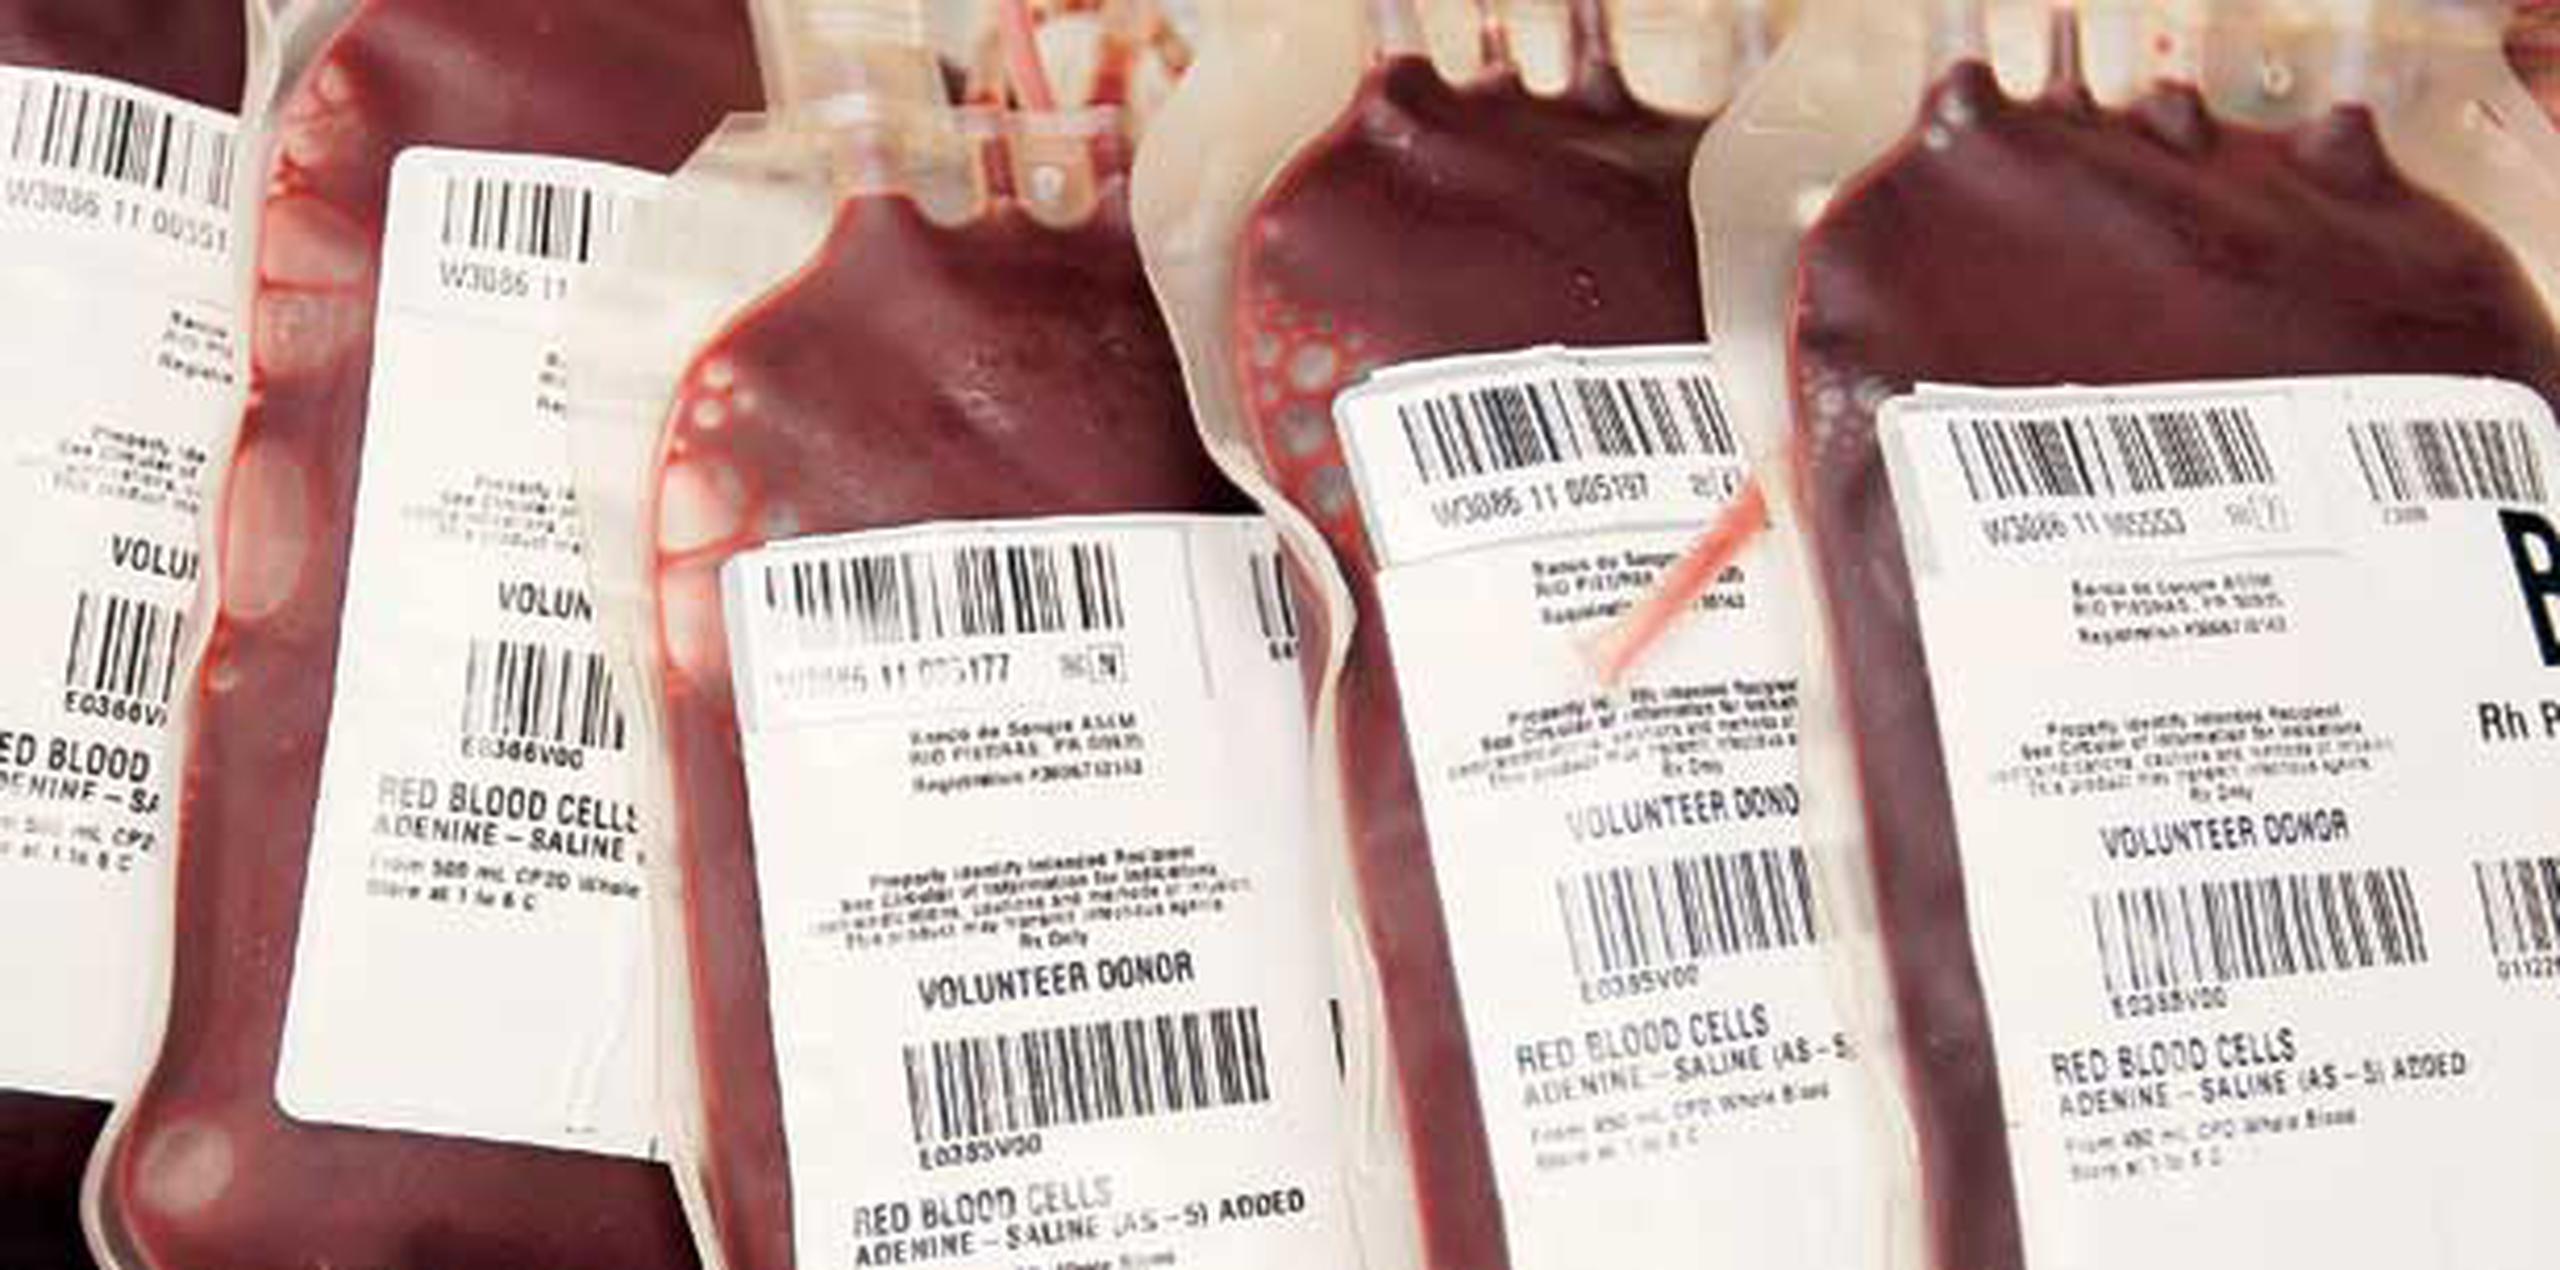 La especialista dijo que hay otras modalidades como sustitutos de la transfusión de sangre, pero las mismas no están disponibles en Puerto Rico. (Archivo)